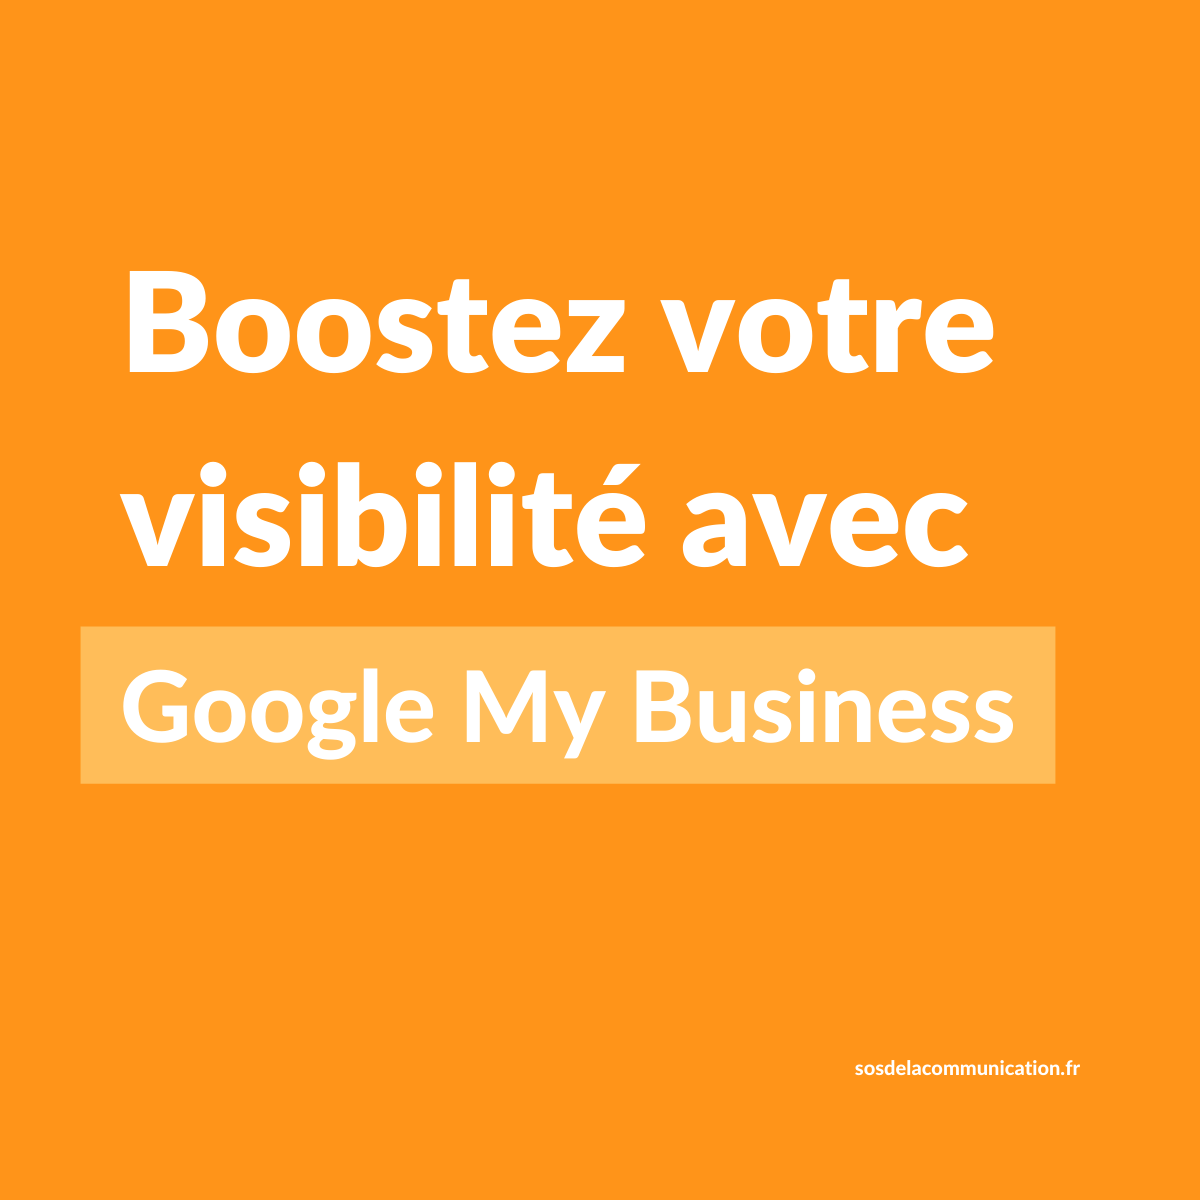 Boostez votre visibilité avec Google My Business